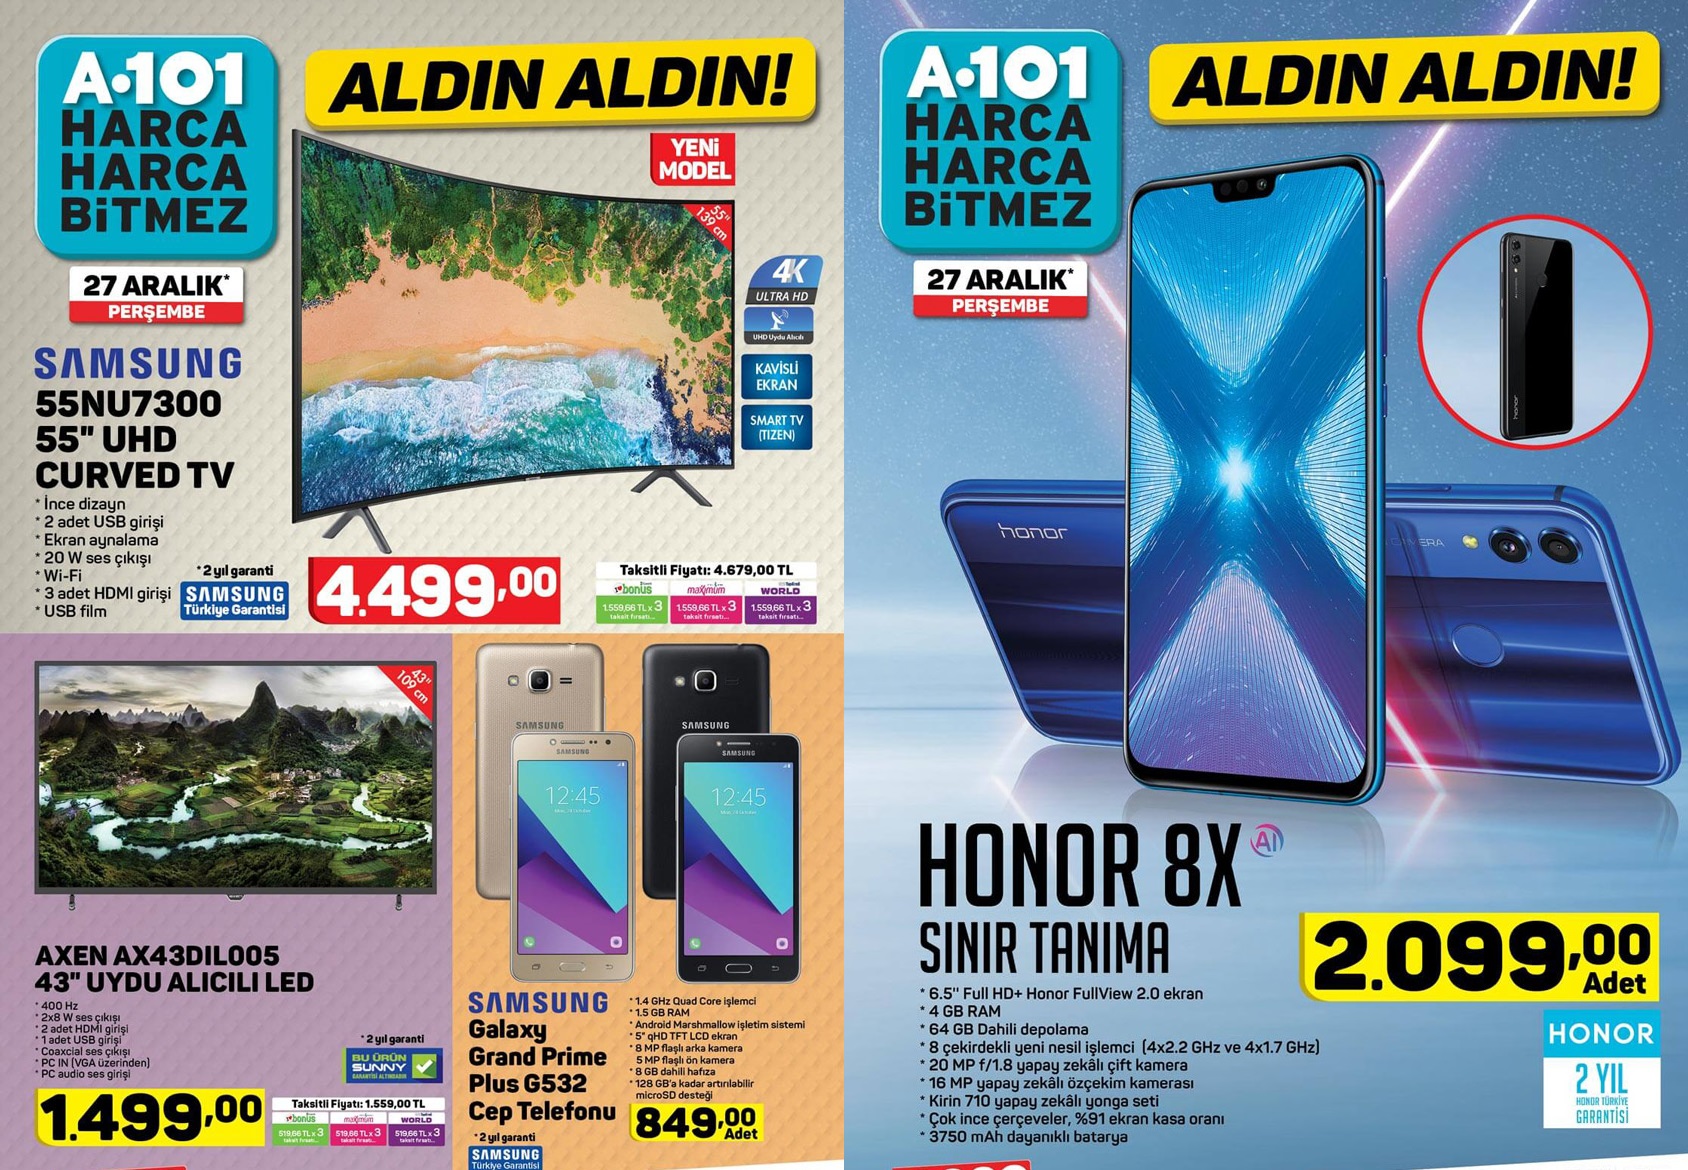 Haftaya A101 marketlerde daha ucuz Honor 8X var, BİM marketler uygun fiyata Meizu hoparlör satacak